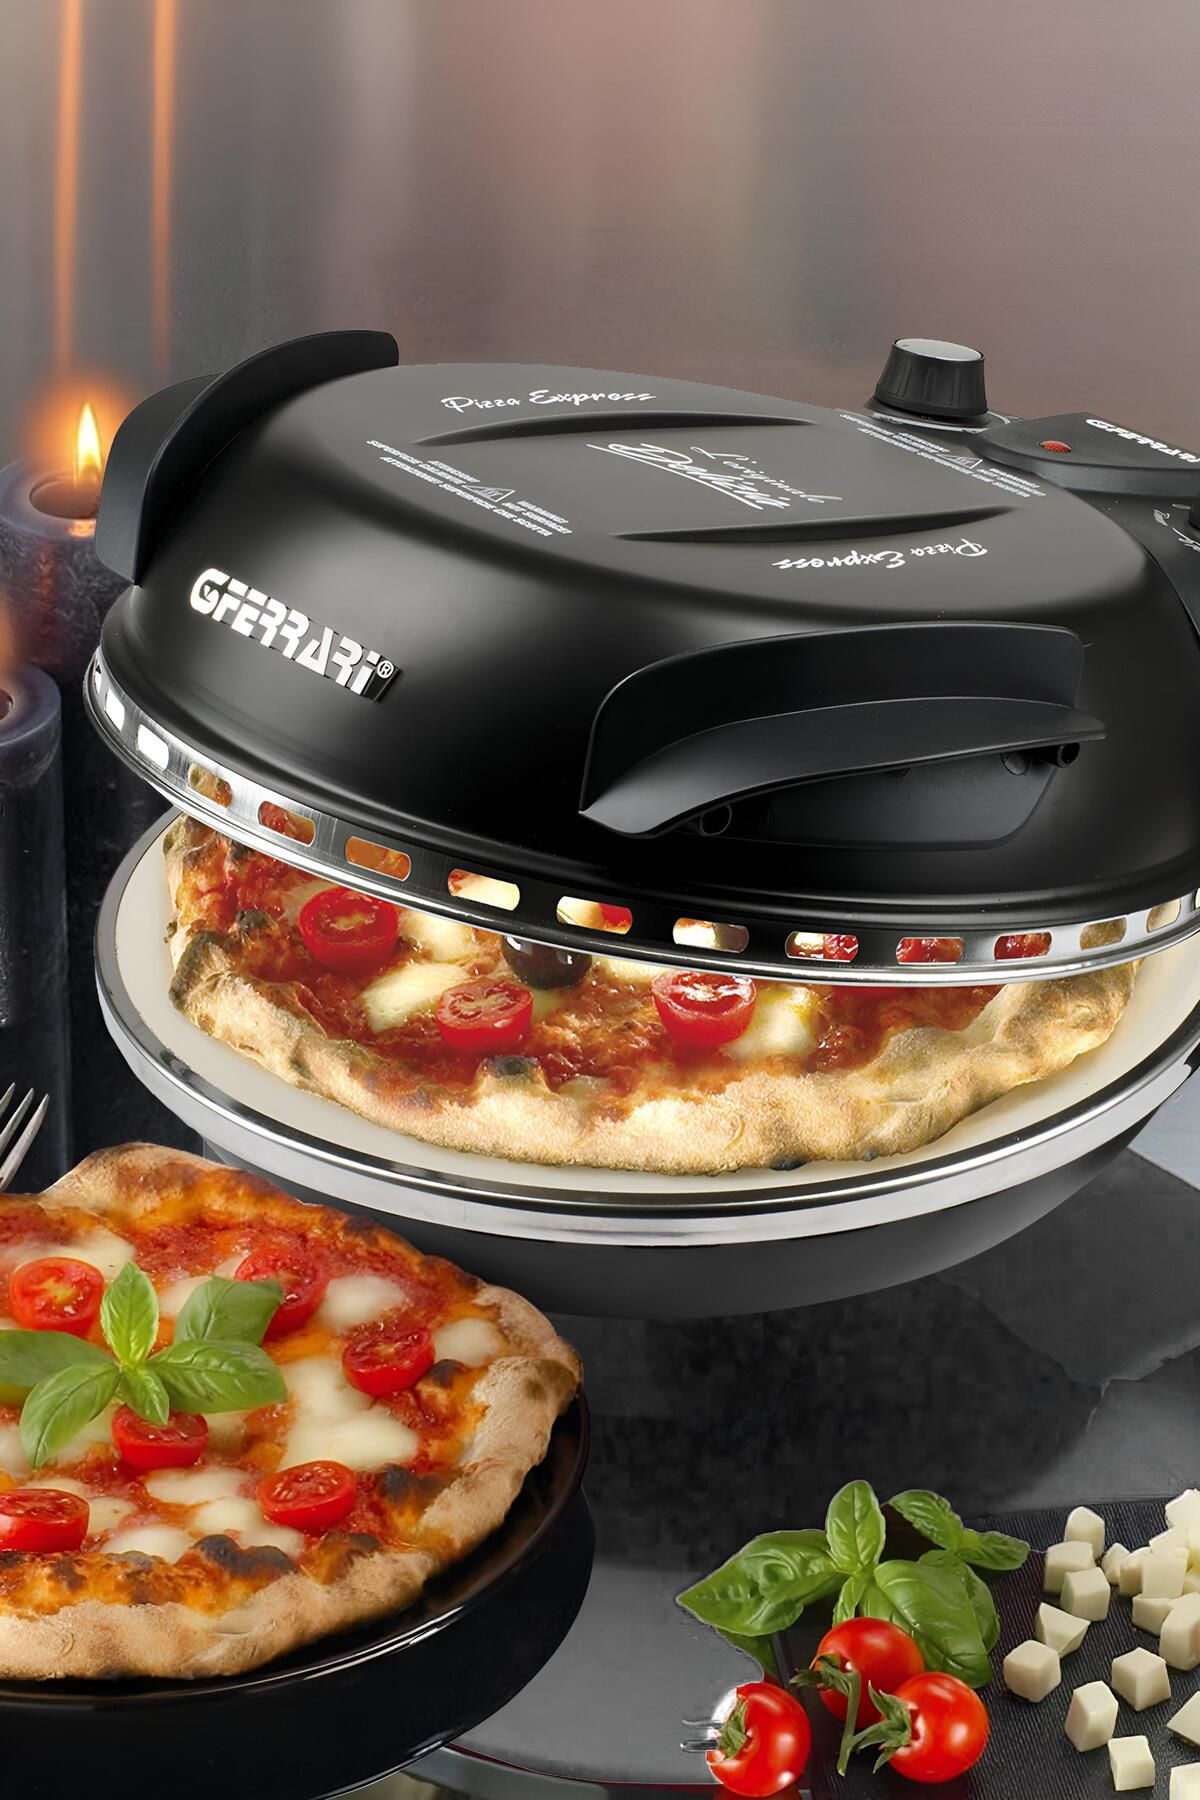 G3ferrari G3ferrarı Delizia Pizza Makinesi Fiyatı, Yorumları - Trendyol